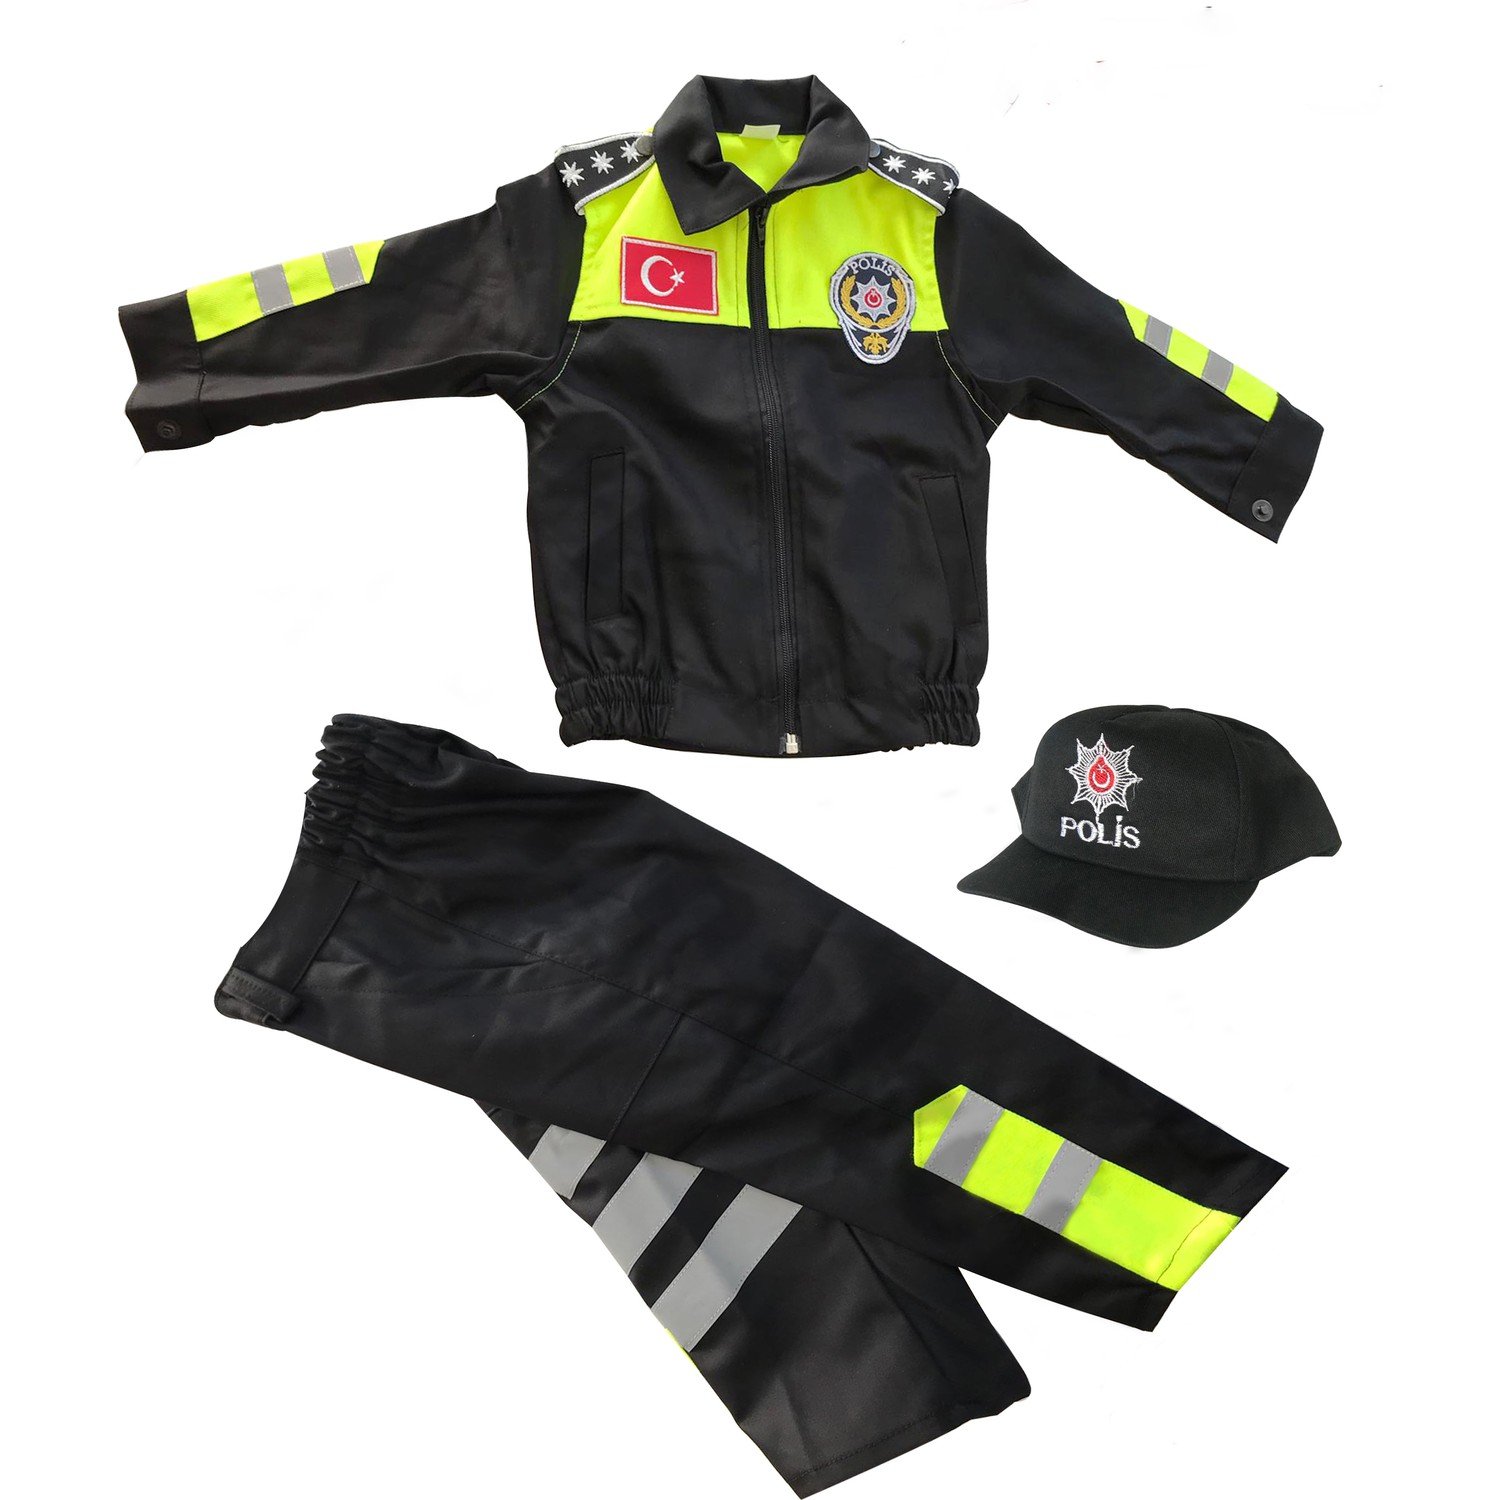 trafik çocuk üniforması , çocuk polis kıyafeti , çocuk polis takımı